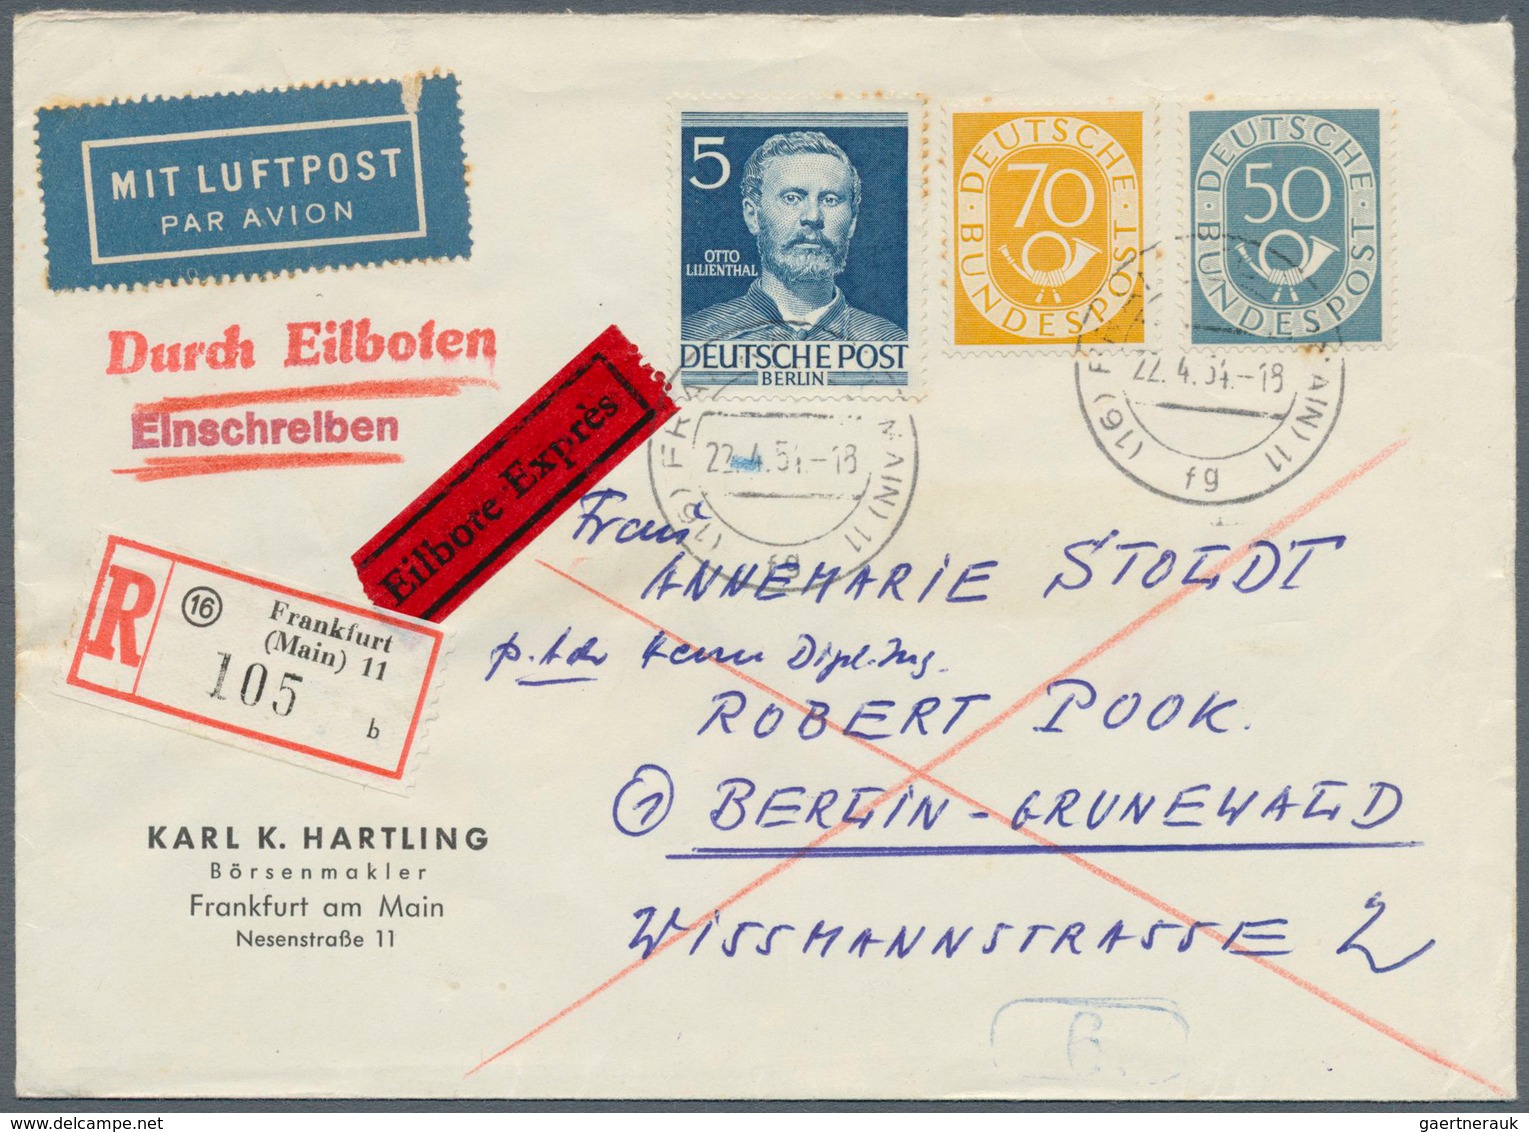 Bundesrepublik Deutschland: 1951, Posthorn, umfangreiche Sammlung von ca 470 Belegen in 6 Alben, dav